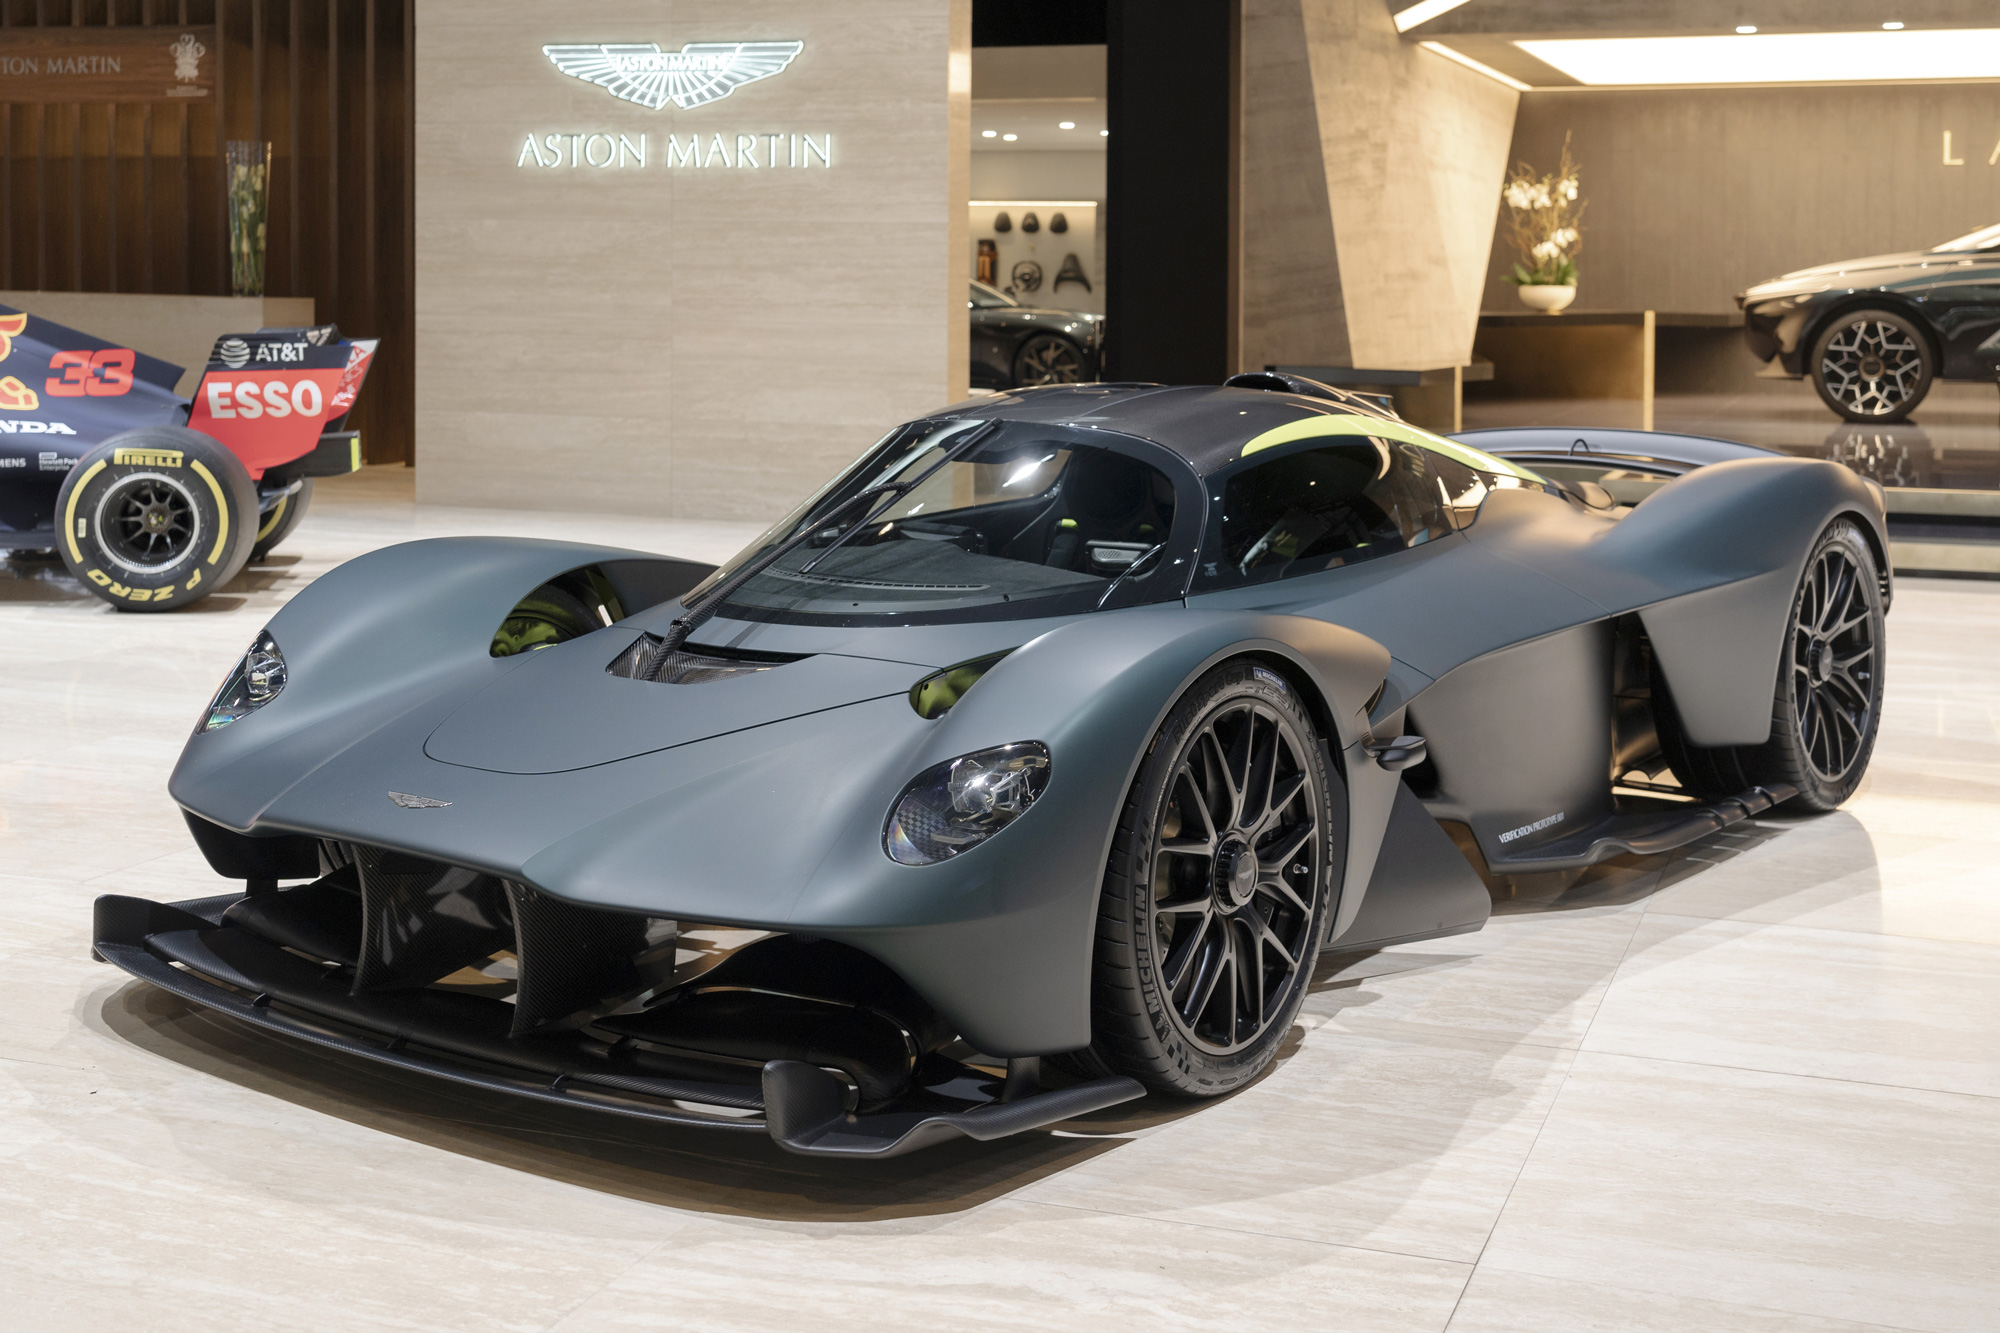 Aston Martin Valkyrie Hypercar Deposit Lawsuit Against Swiss Dealer Nebula - Bloomberg